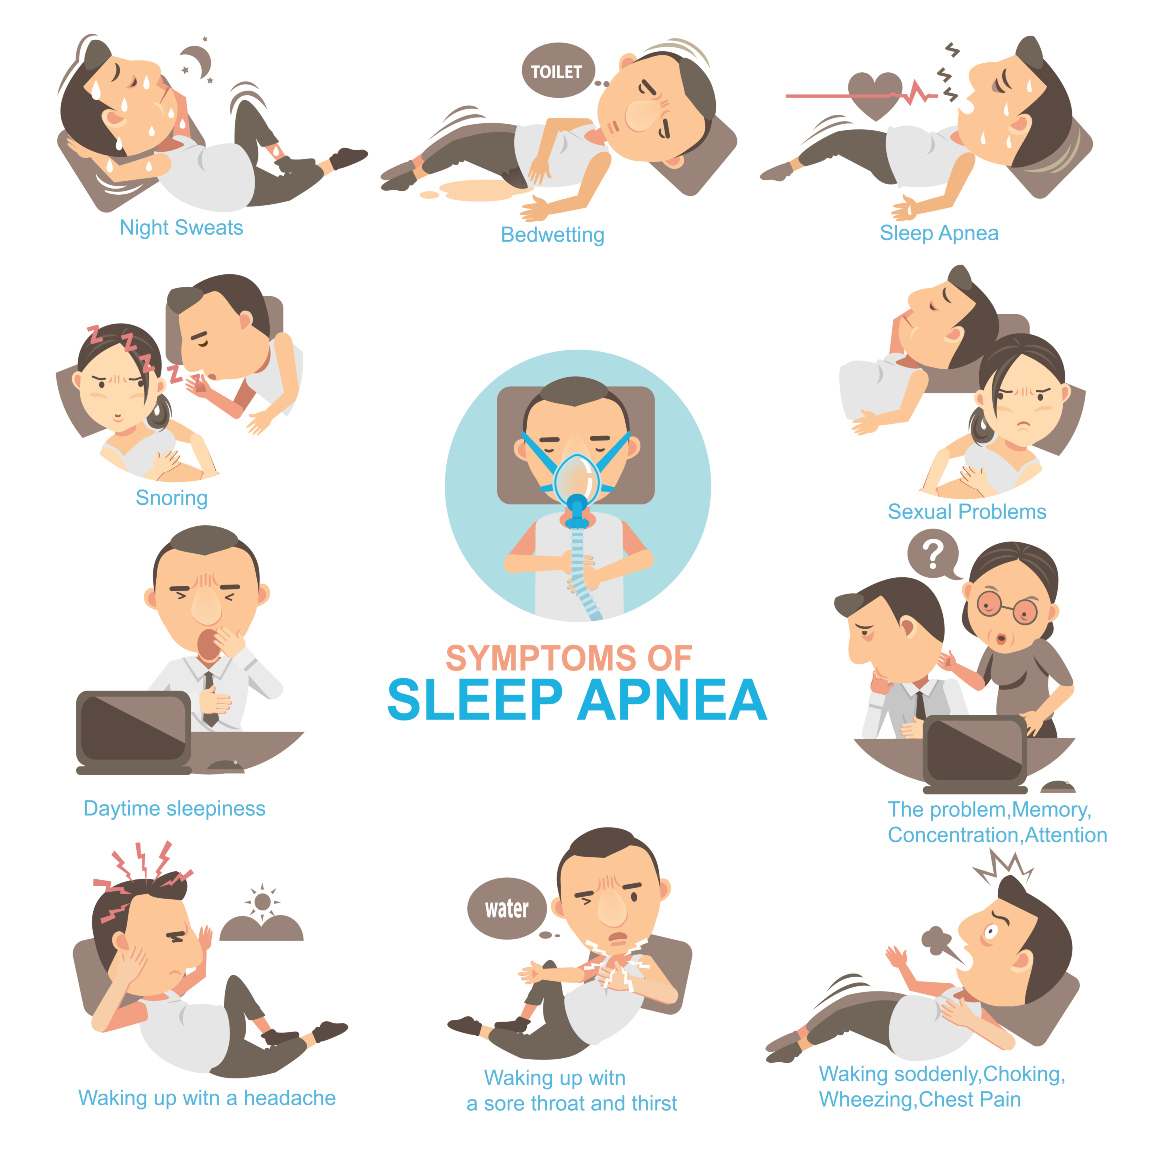 Az obstruktív alvási apnoe előfordulása